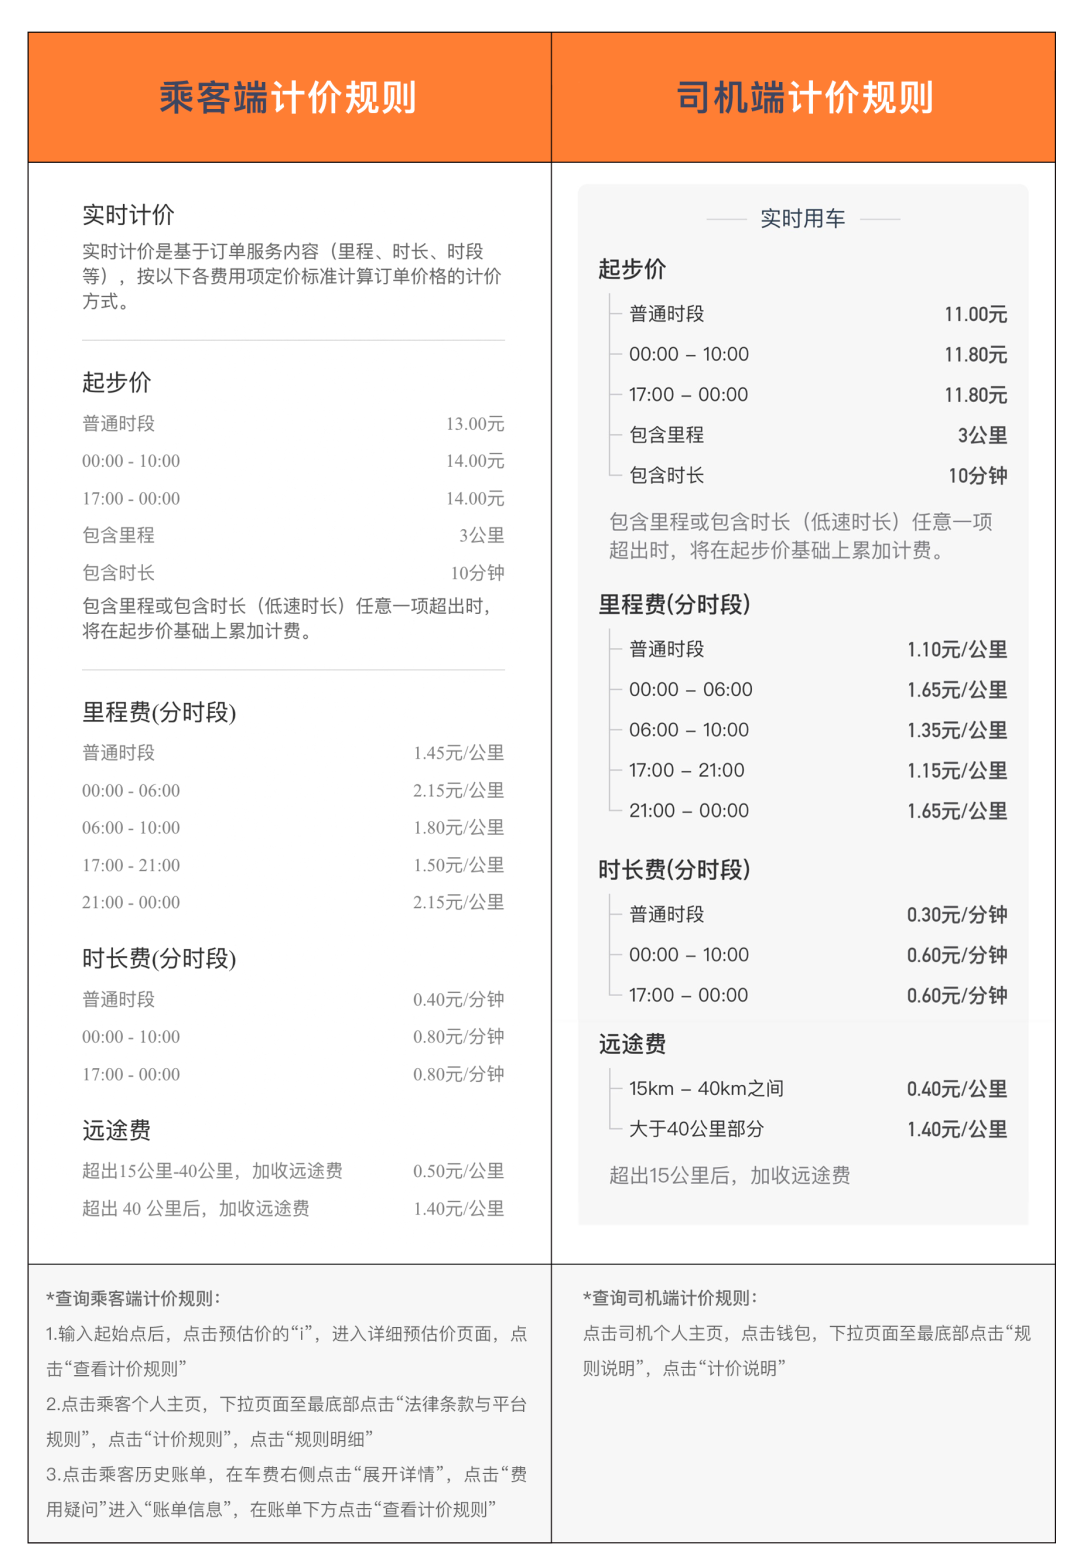 图2 乘客端和司机端计价规则（北京快车）